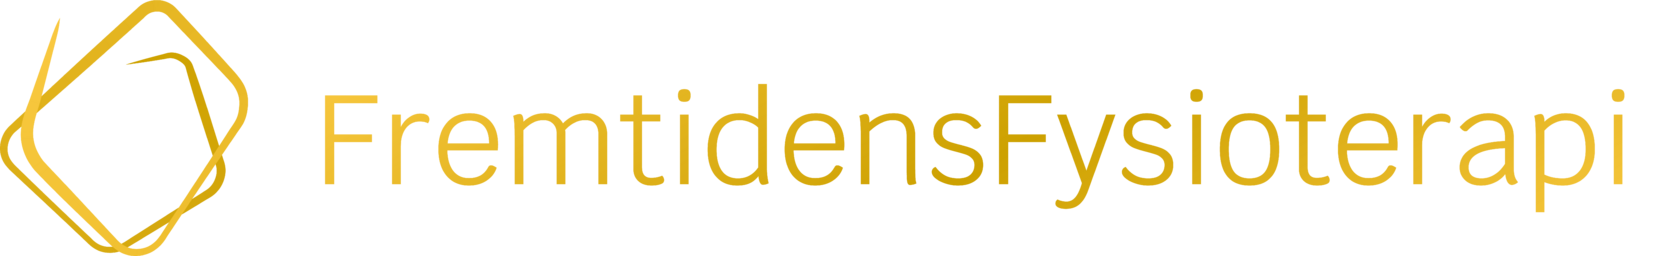 logo-guld.png